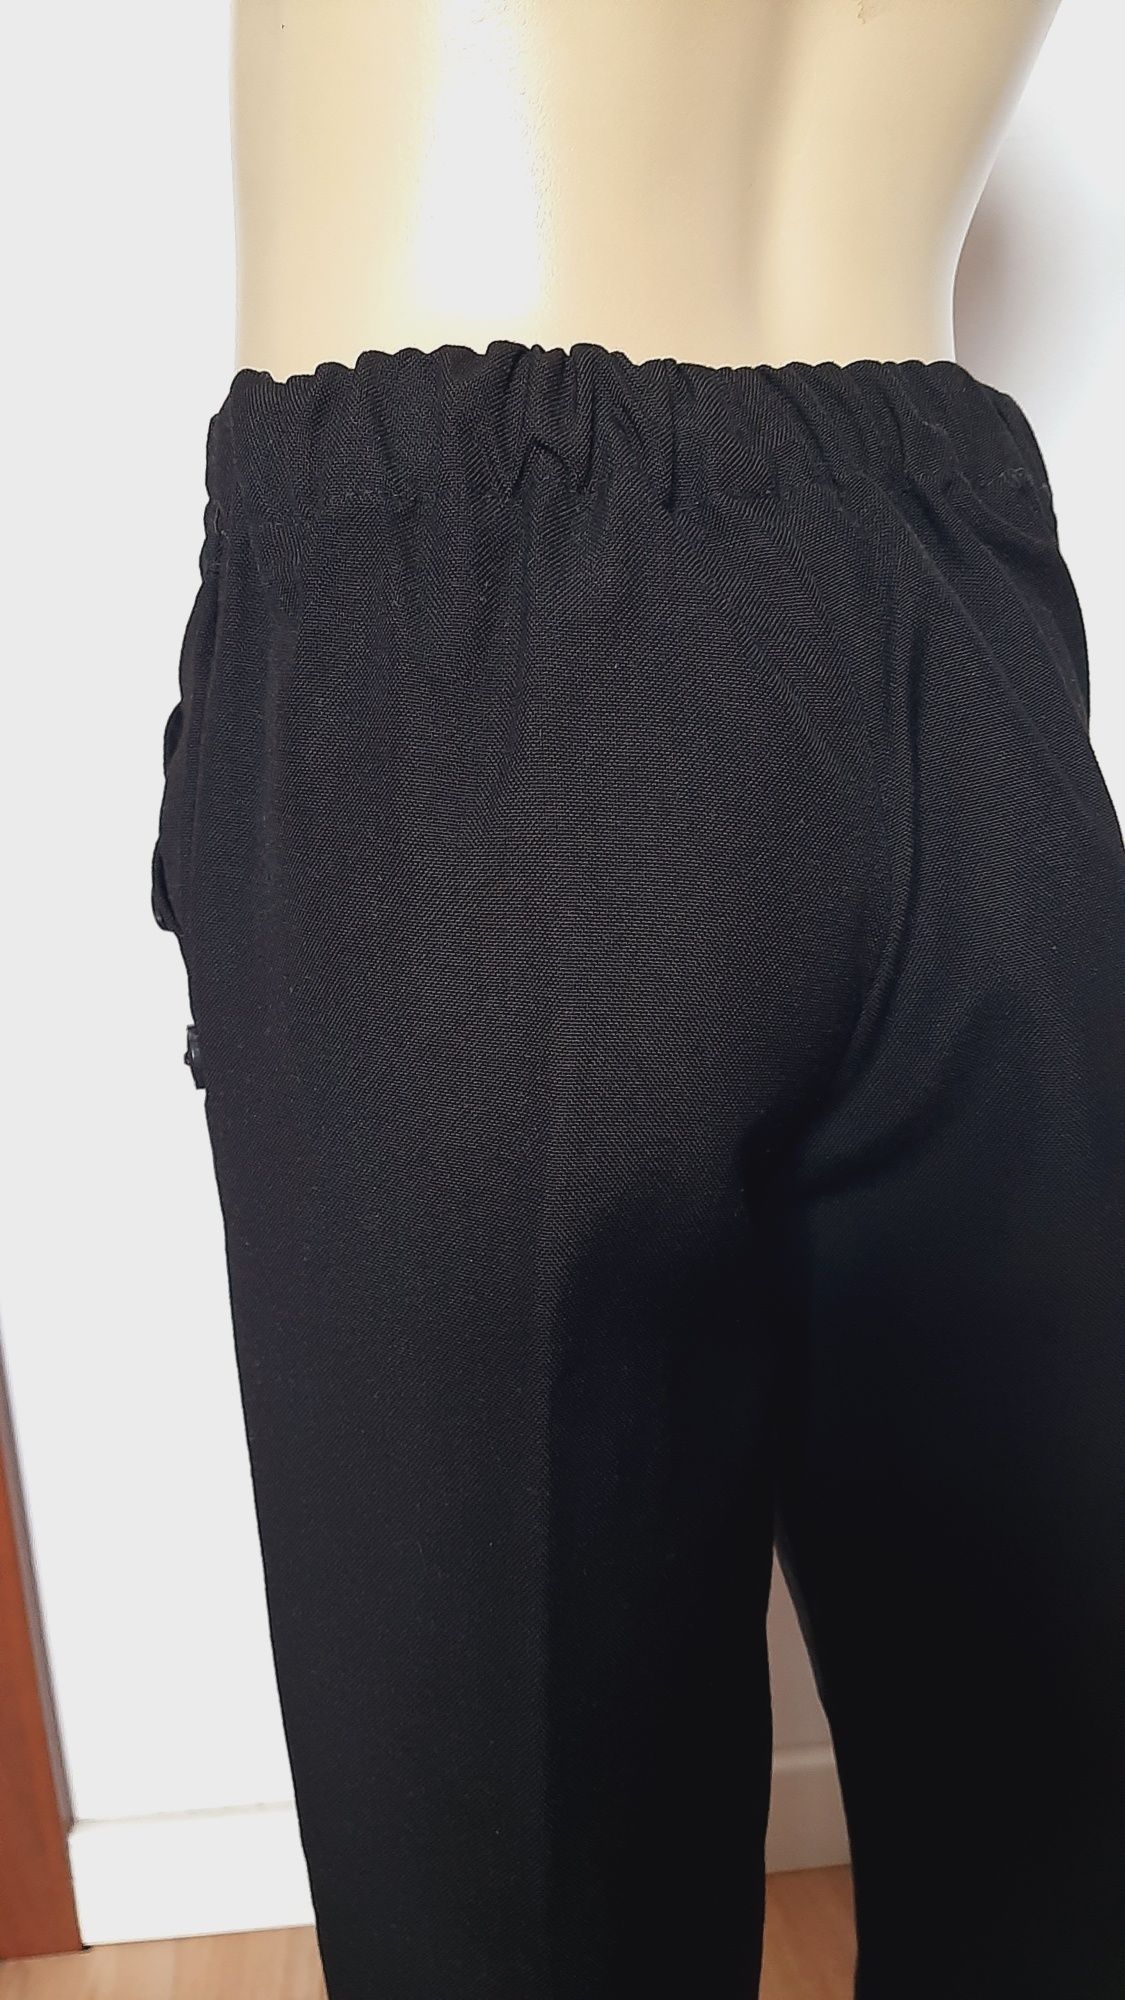 Sg Spodnie  110  dla dziewczynki  , czarne Spodnie  dla dziewczynki  1